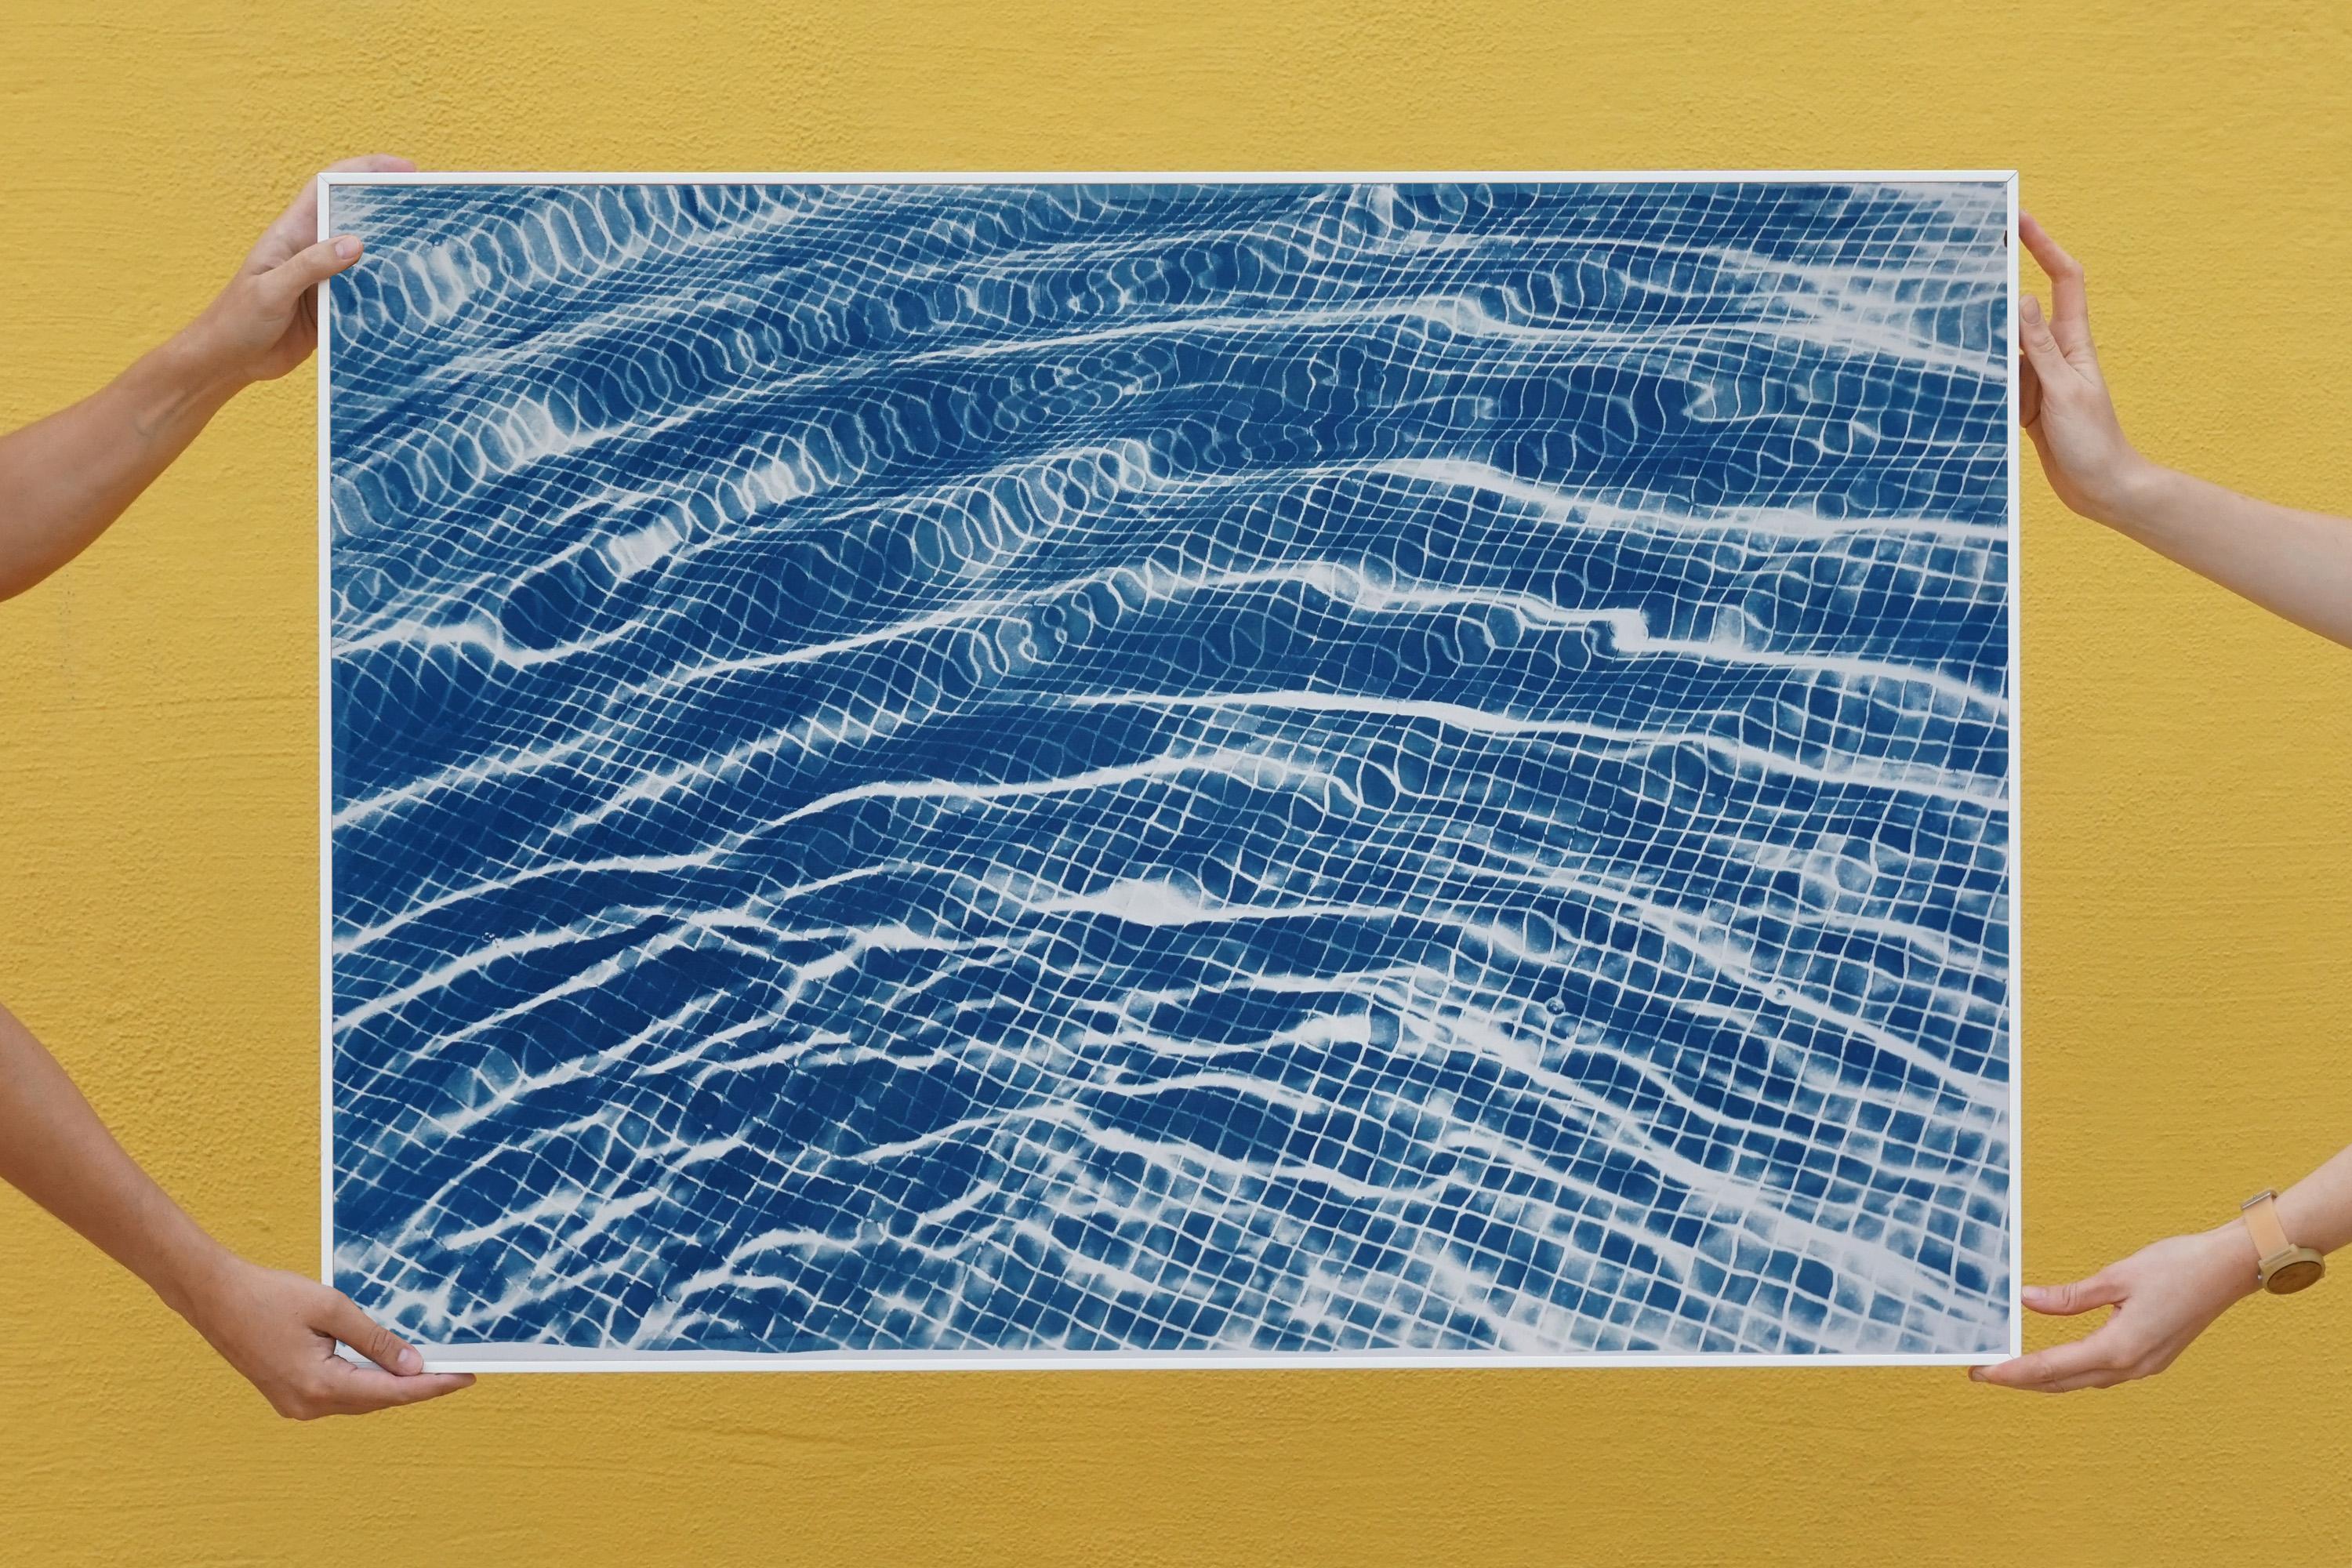 Pool Miami Art Déco, cyanotype bleu sur papier, formes abstraites, reflets d'eau  - Print de Kind of Cyan